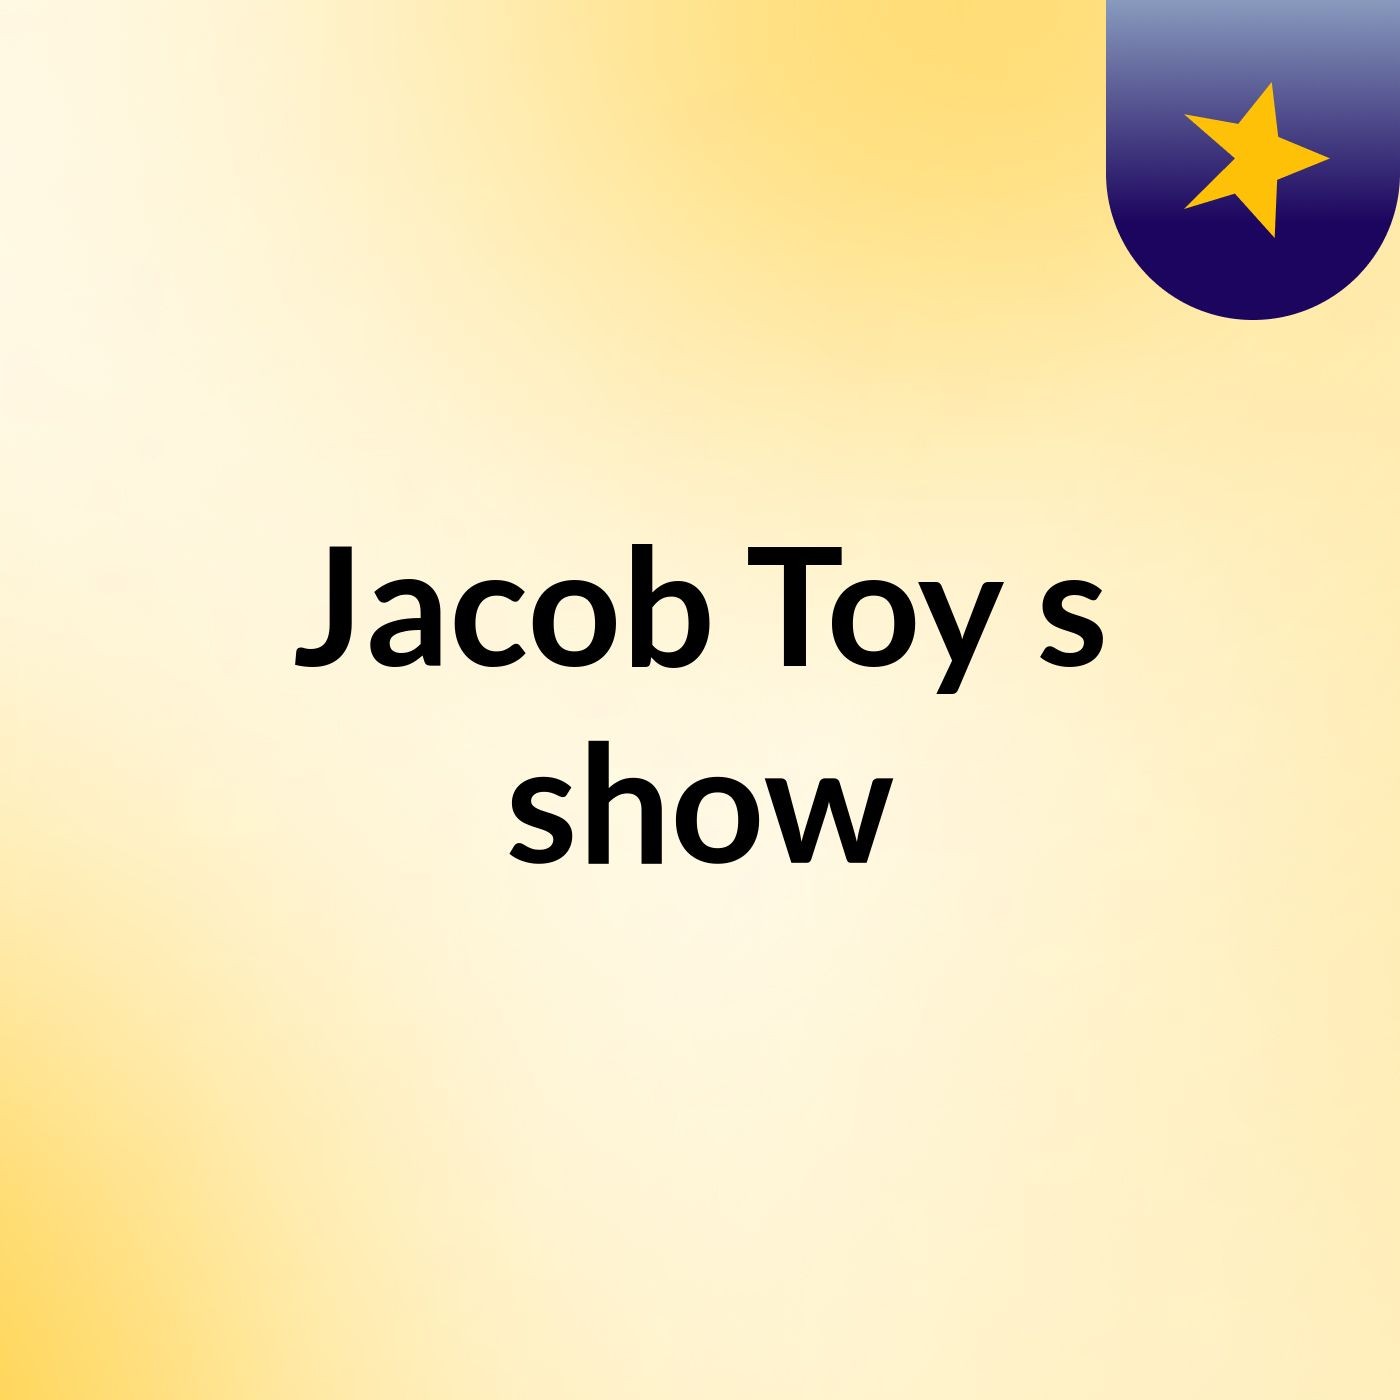 Jacob Toy's show